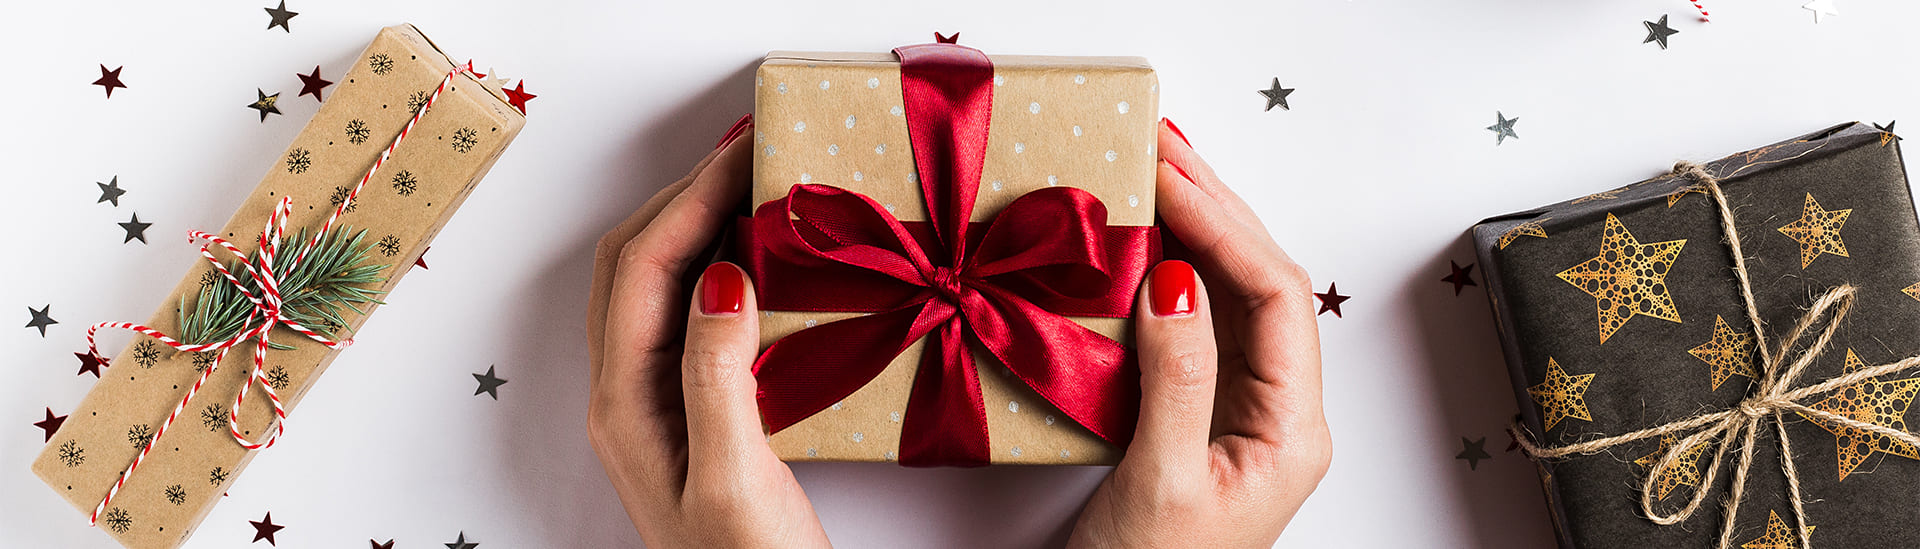 Unsere Top 10 Weihnachtsgeschenke für Frauen